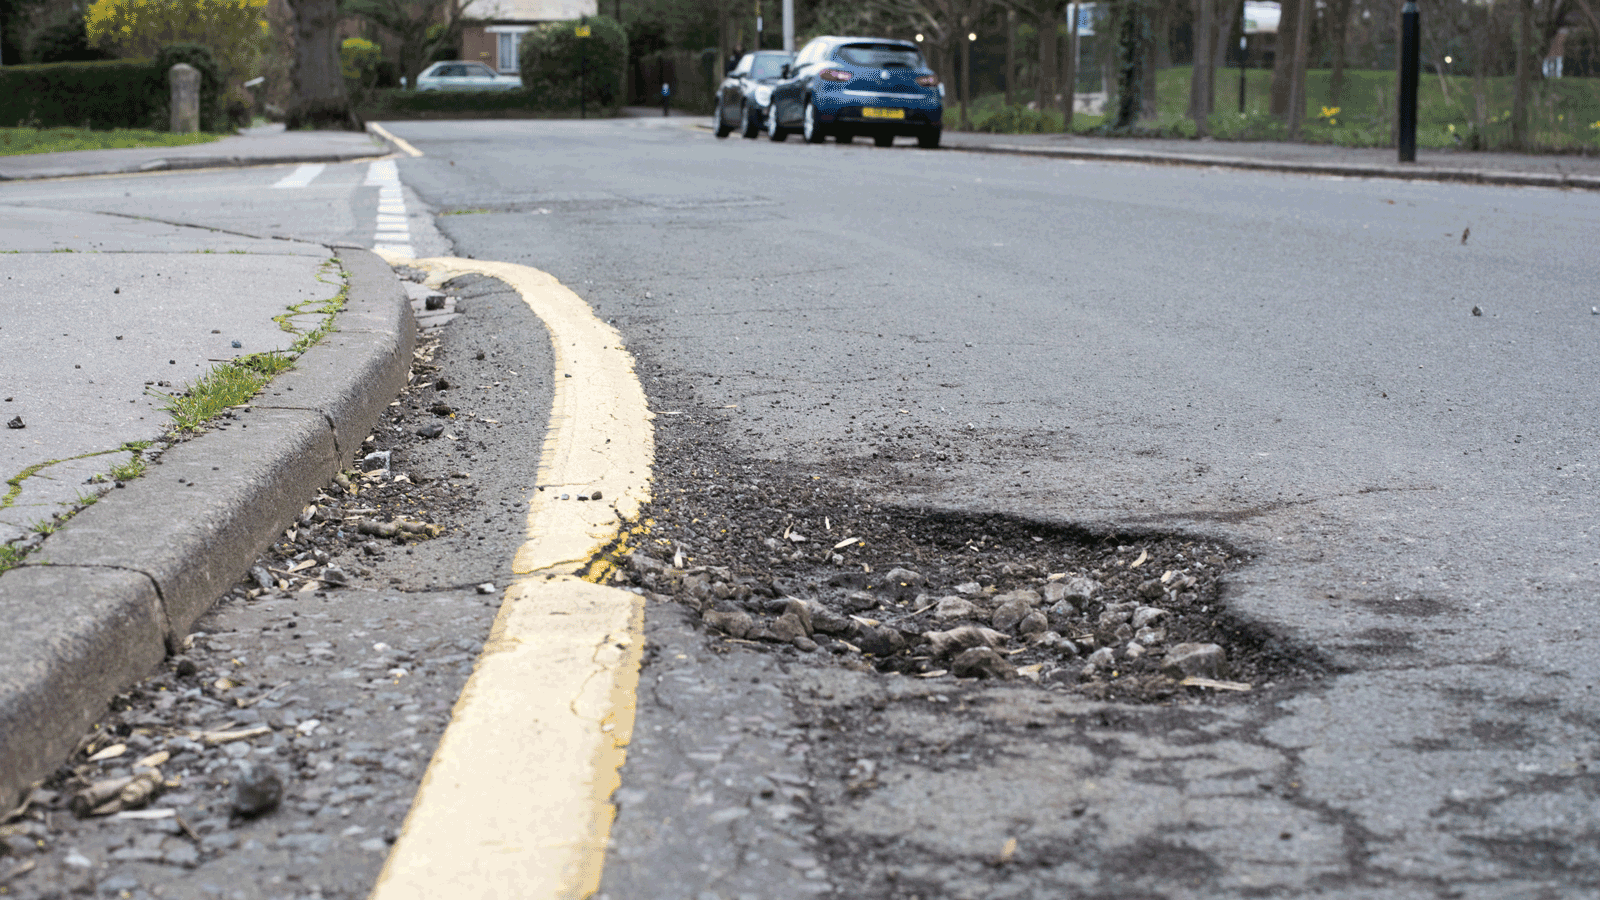 Lack of data hampers efforts to fix UK’s pothole problem, watchdog finds